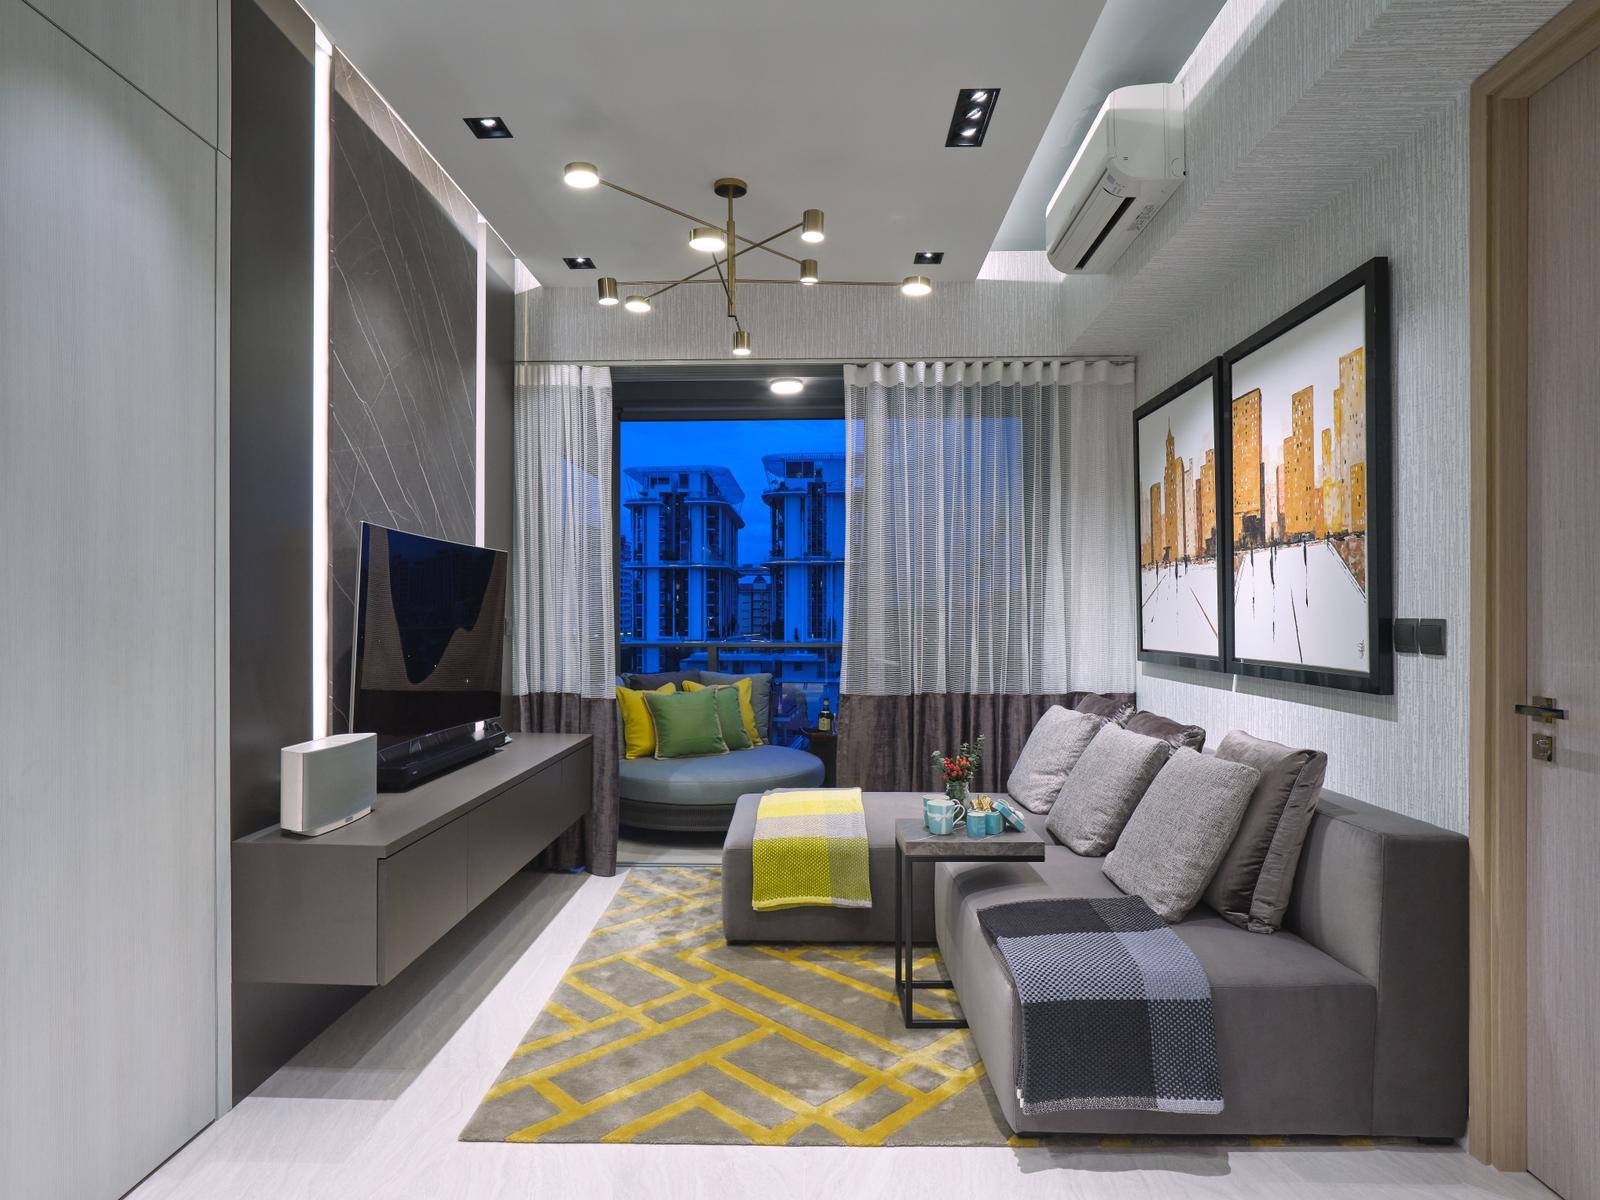 squarerooms spaceone interior design eclectic condominium unit monochromatic bold colourful artwork living room